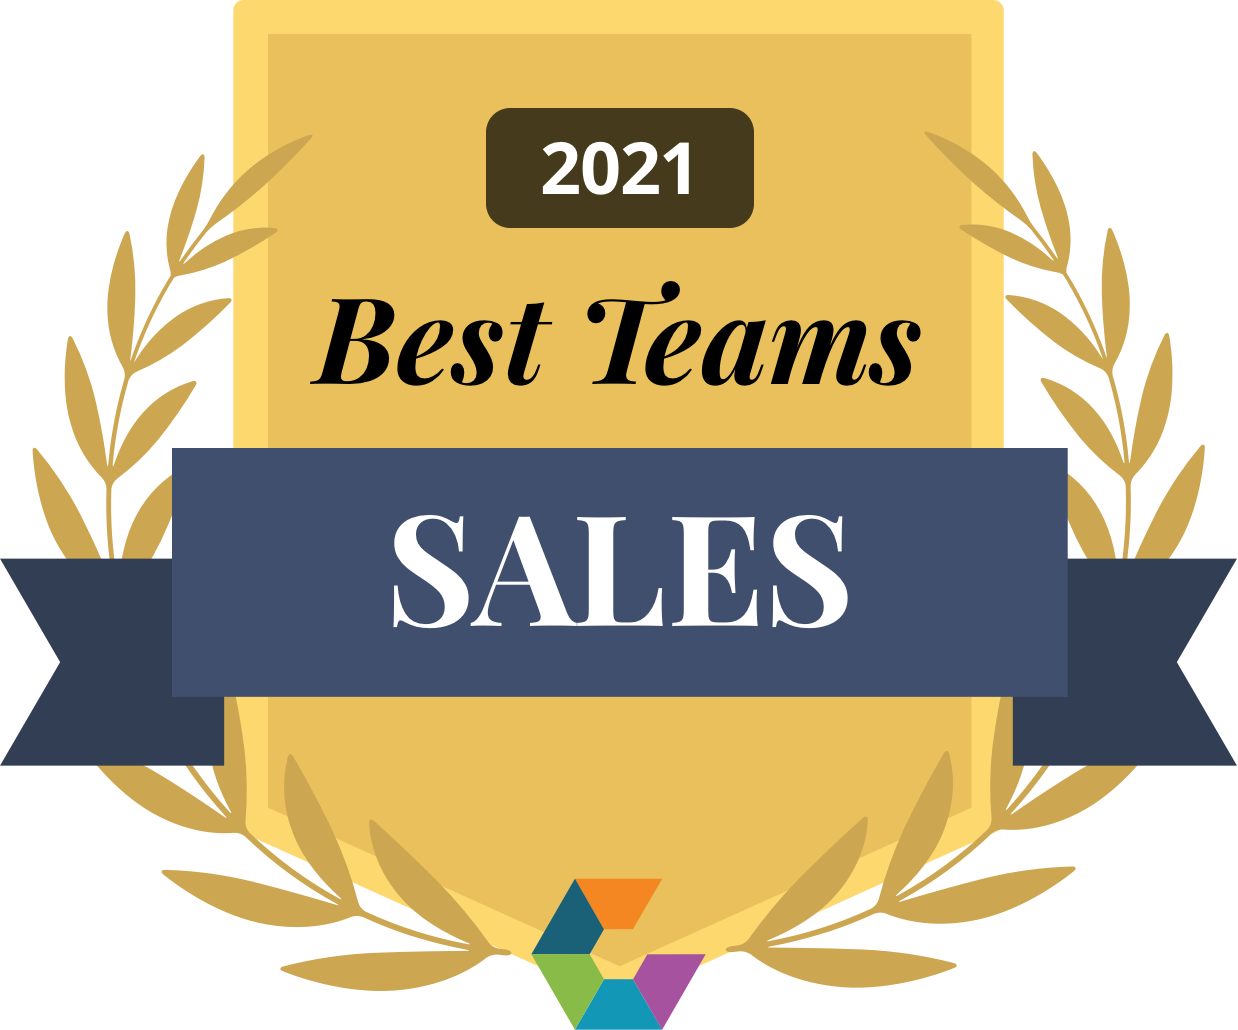 Comparably Award | Best Sales Teams of 2021 | Smartsheet